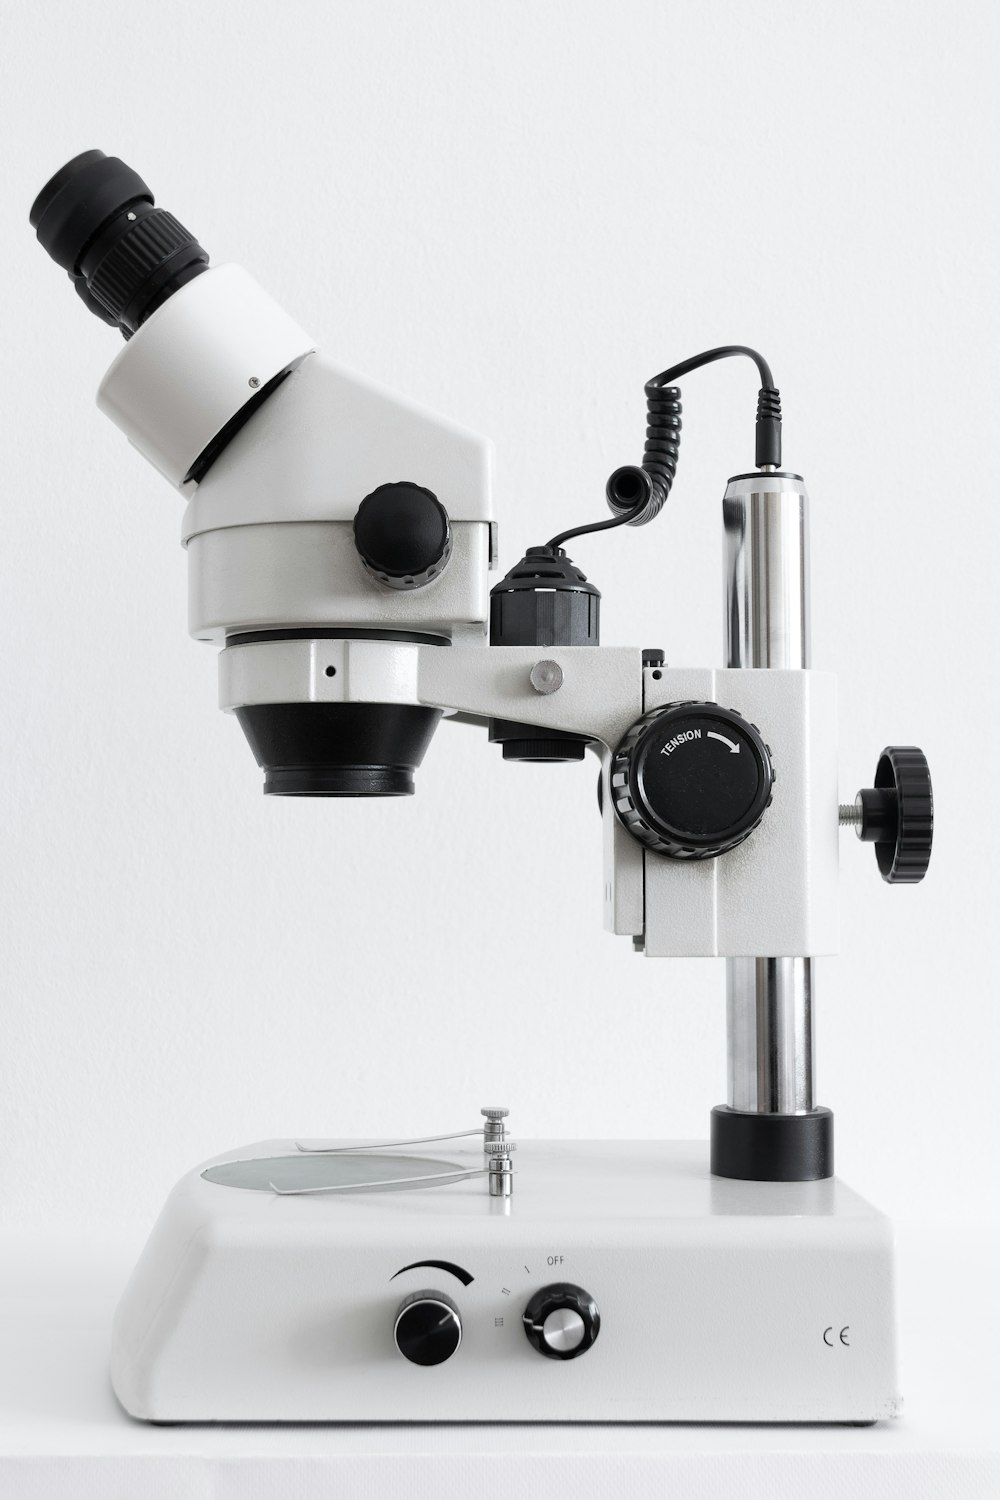 microscopio blanco y negro sobre superficie blanca